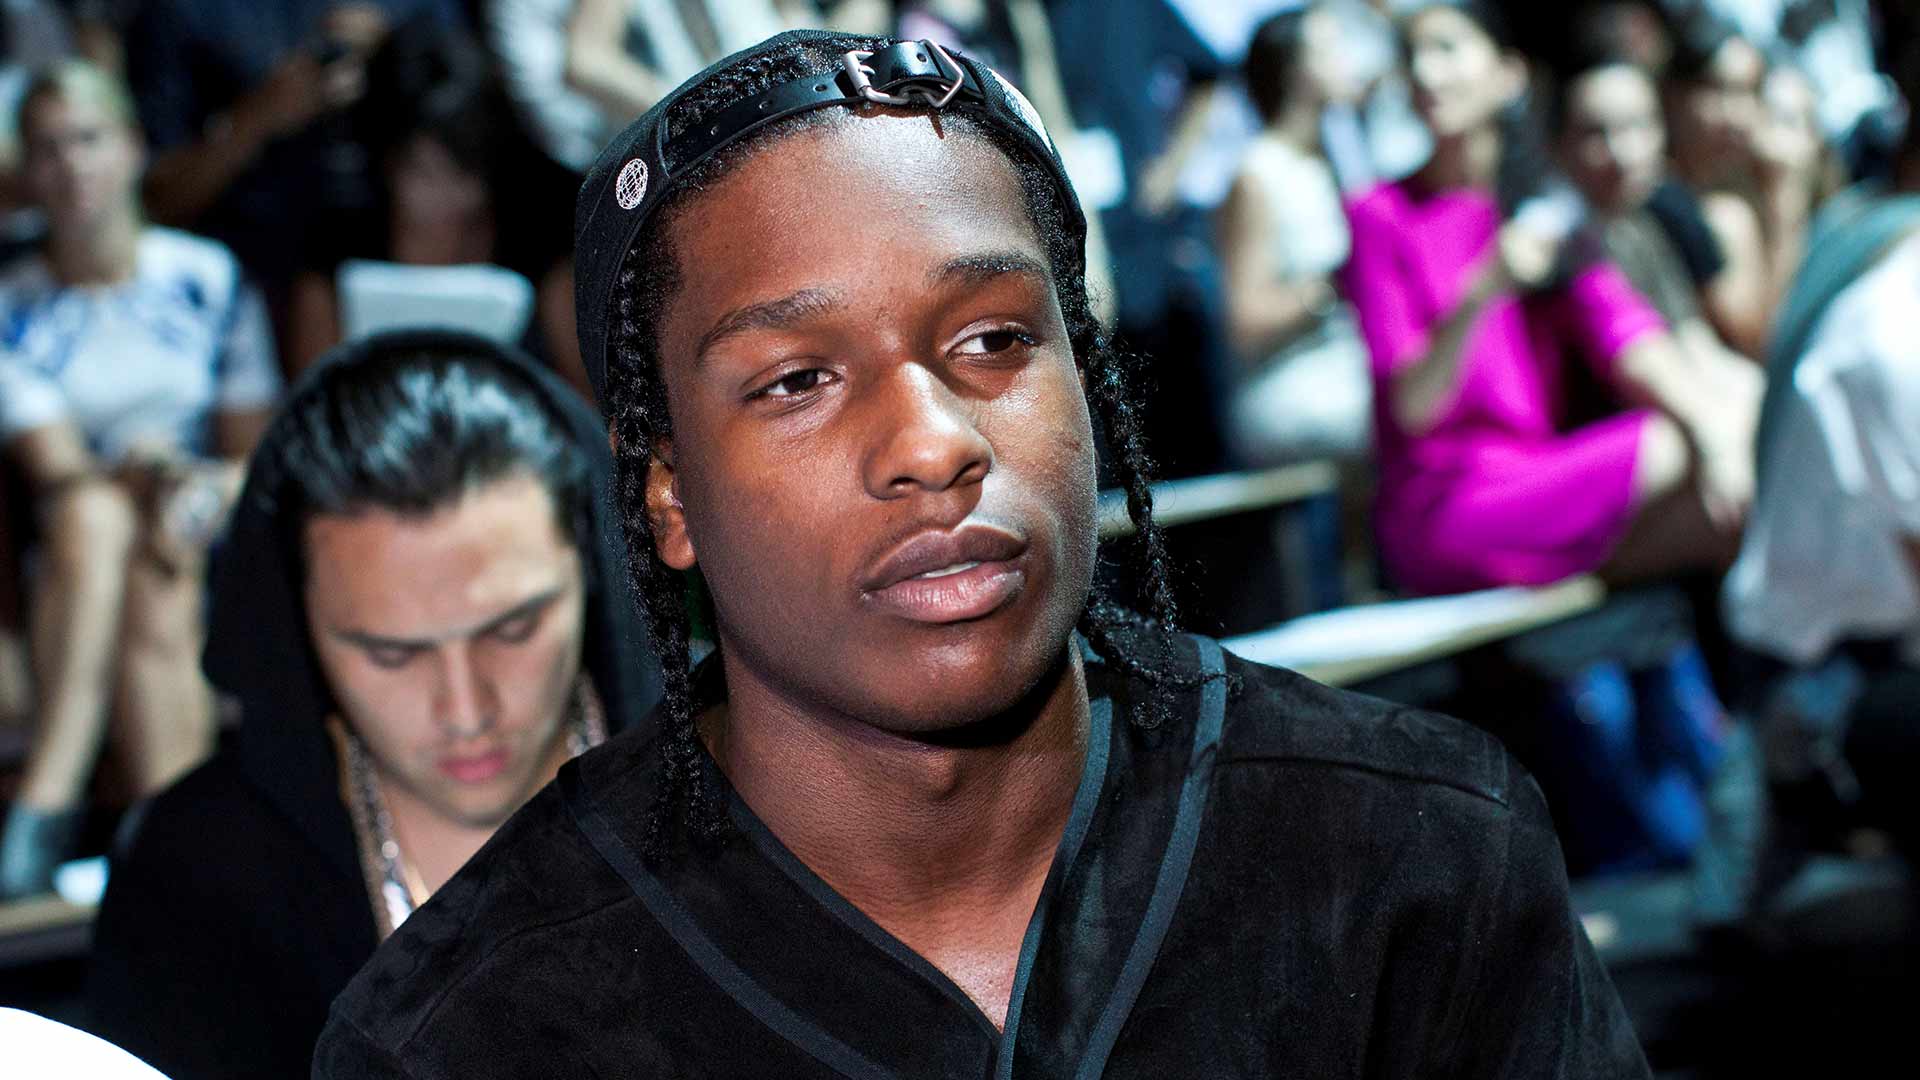 El rapero A$AP Rocky dice que estaba “asustado” y alega legítima defensa en su juicio en Suecia